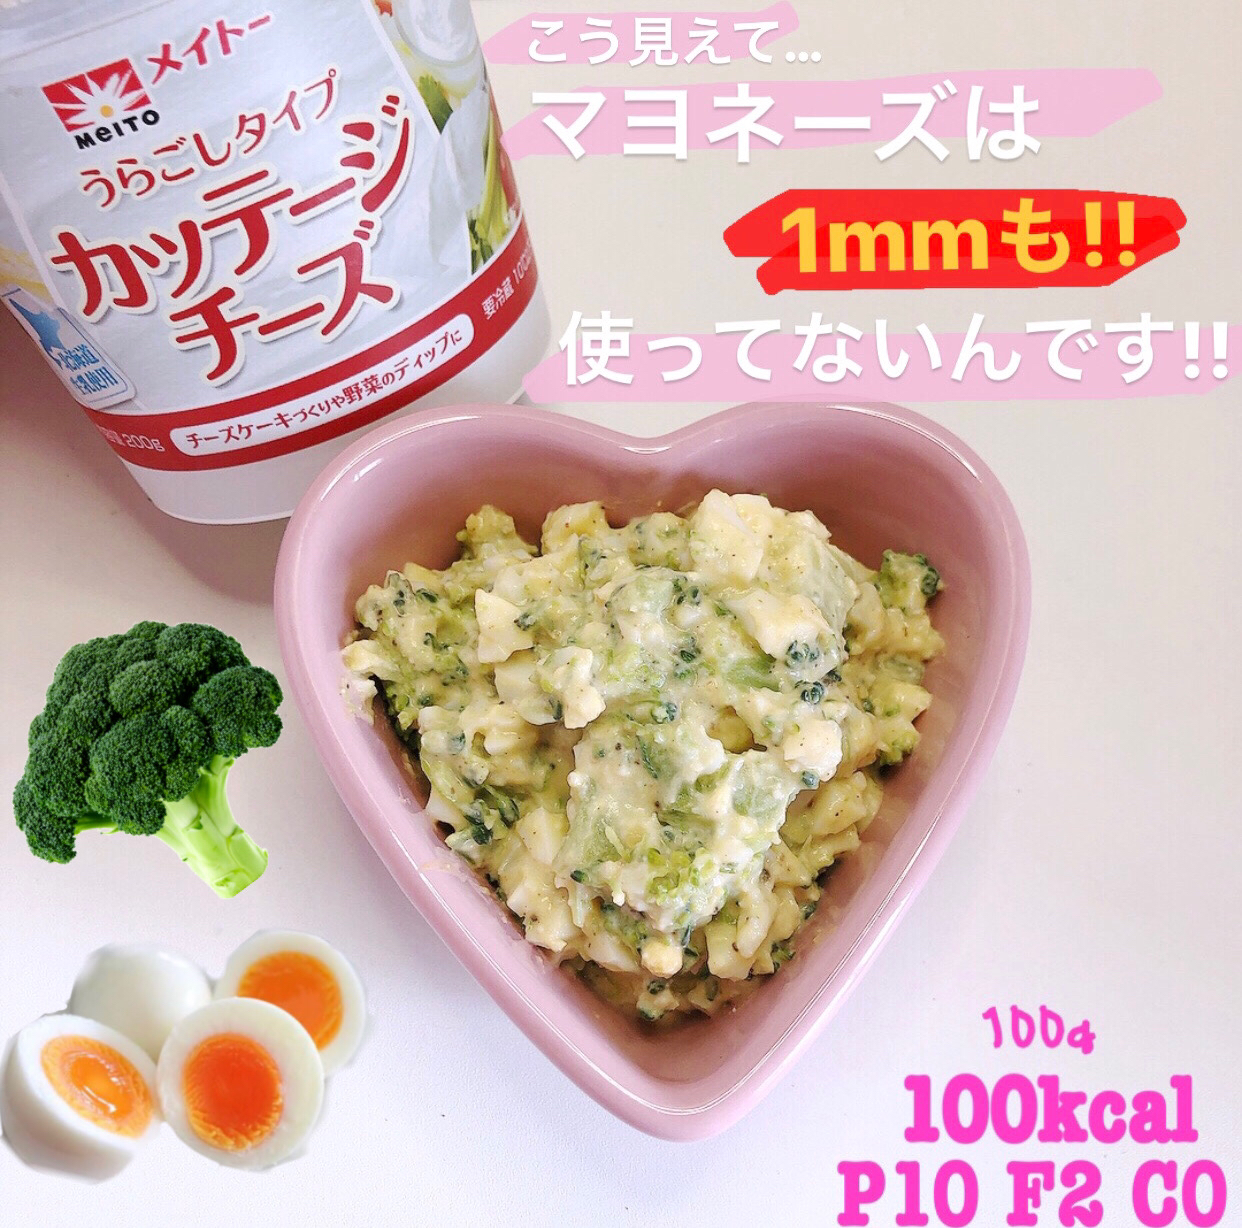 マヨ不使用 ブロッコリーサラダ ෆマヨネーズなしでタンパク質豊富 Meru Xxが投稿したフォトブック Lemon8